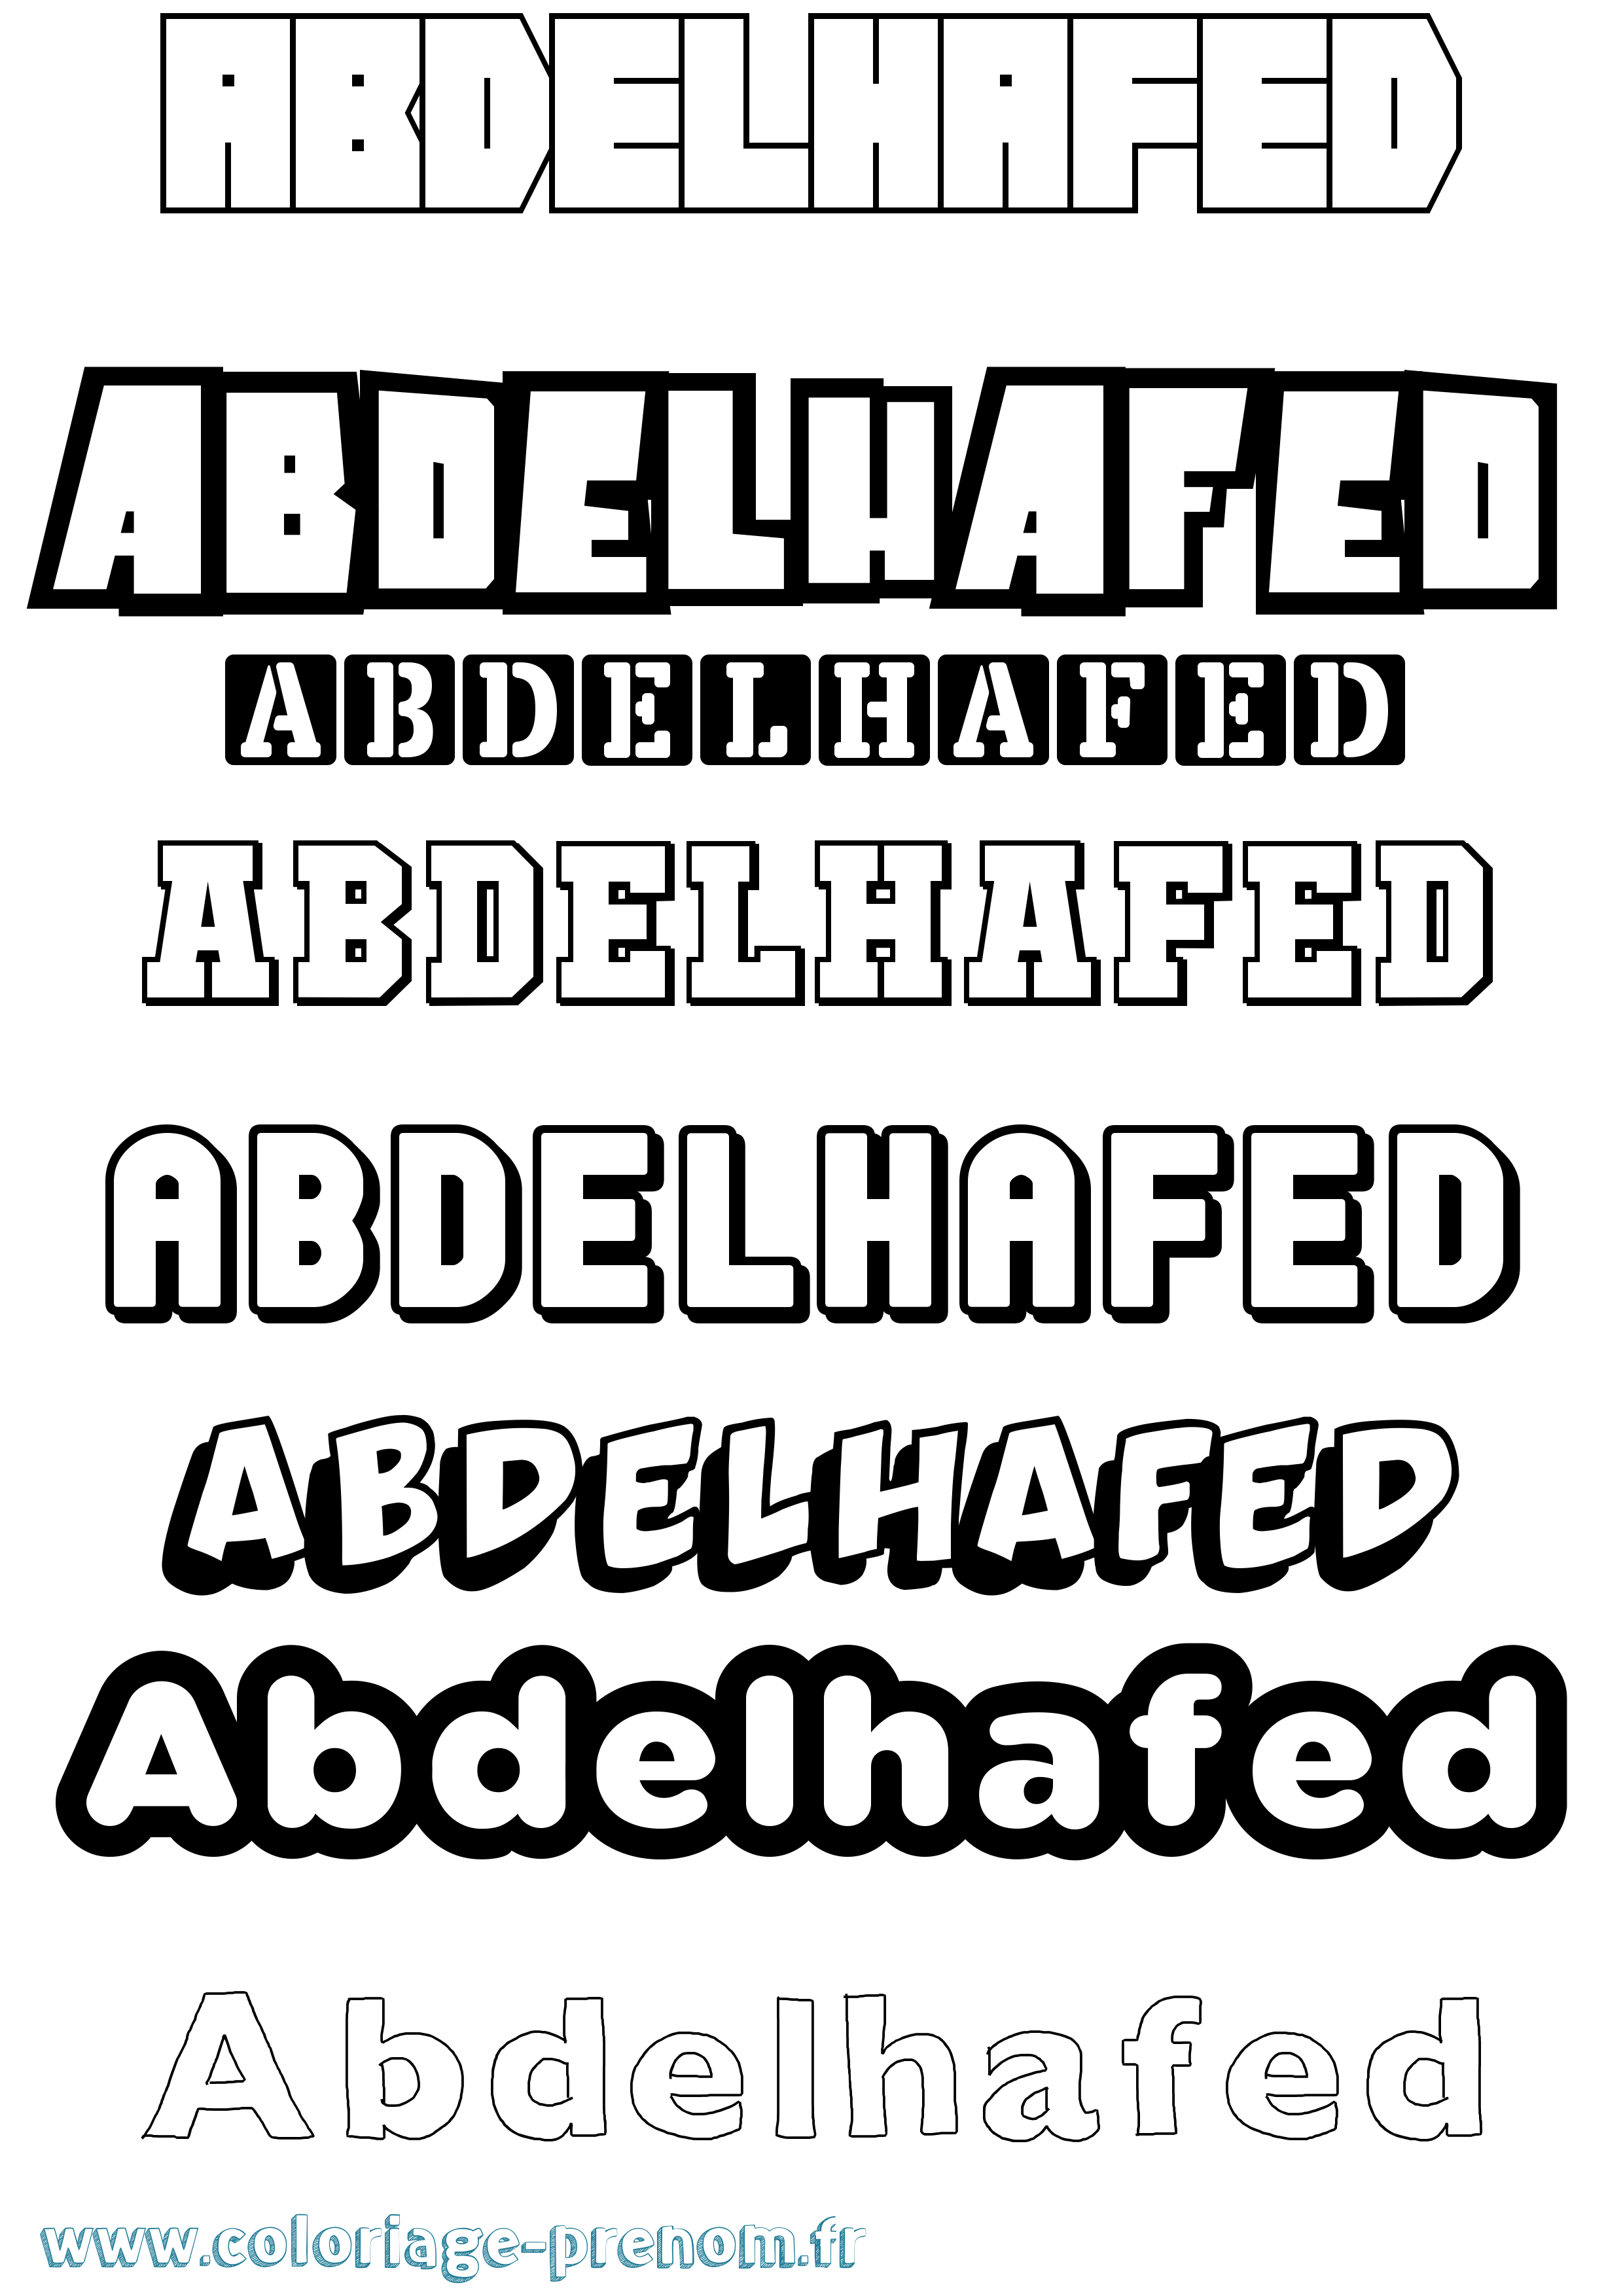 Coloriage prénom Abdelhafed Simple